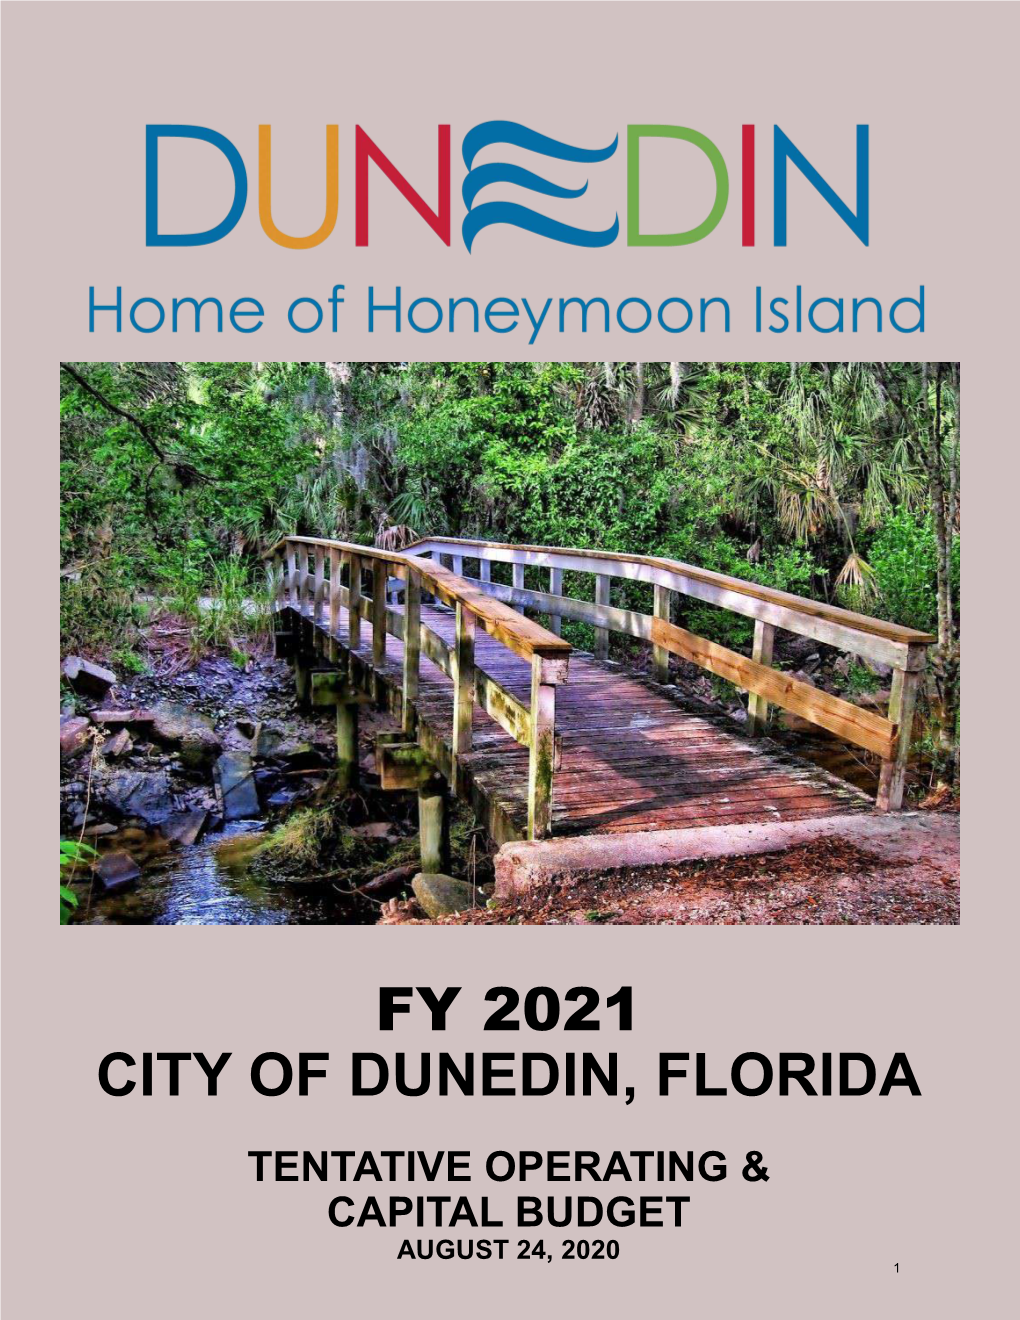 Fy 2021 City of Dunedin, Florida